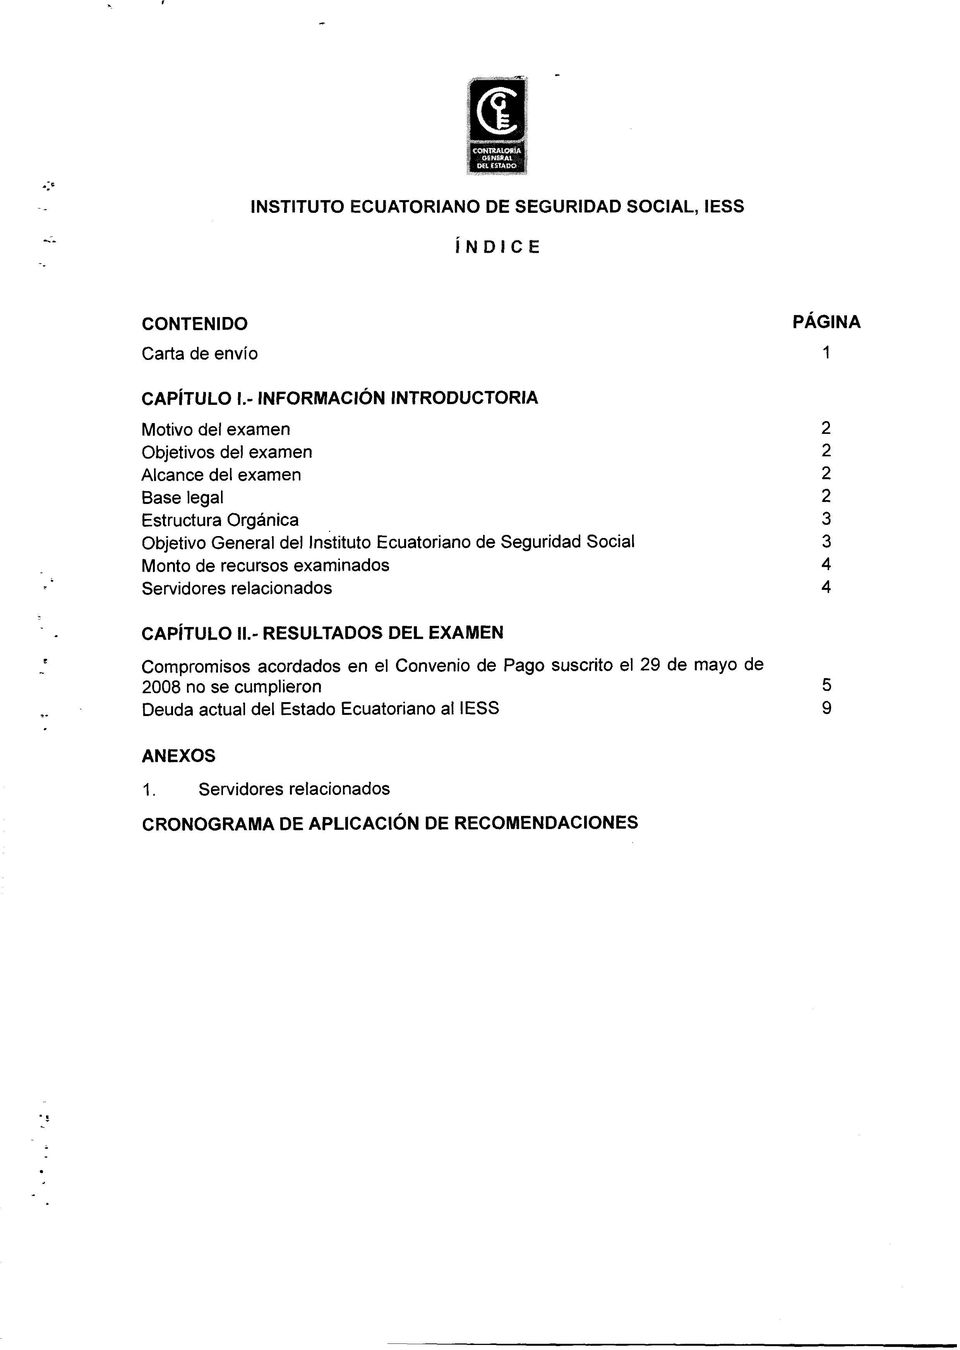 Instituto Ecuatoriano de Seguridad Social 3 Monto de recursos examinados 4 Servidores relacionados 4 CAPÍTULO II.